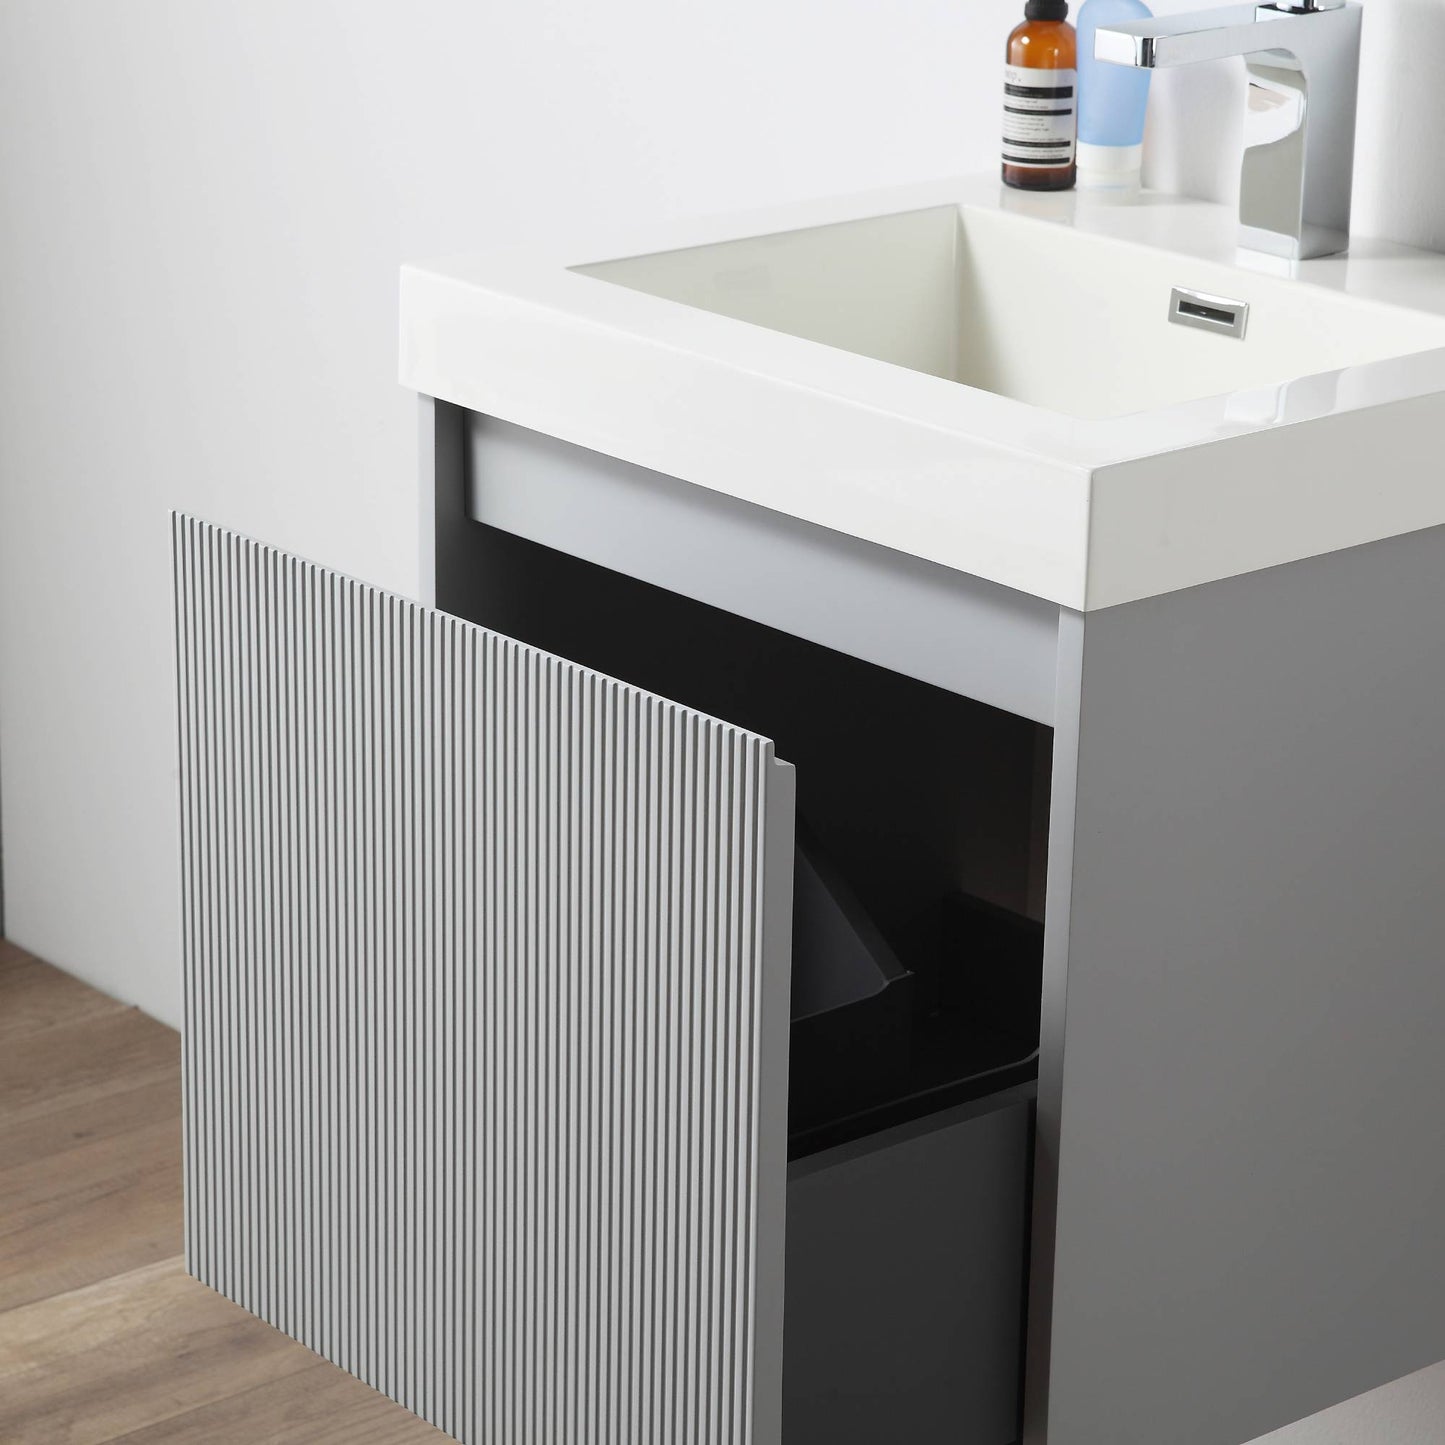 Positano 20" Floating Bathroom Vanity with Acrylic Sink & Side Cabinet - Light Grey